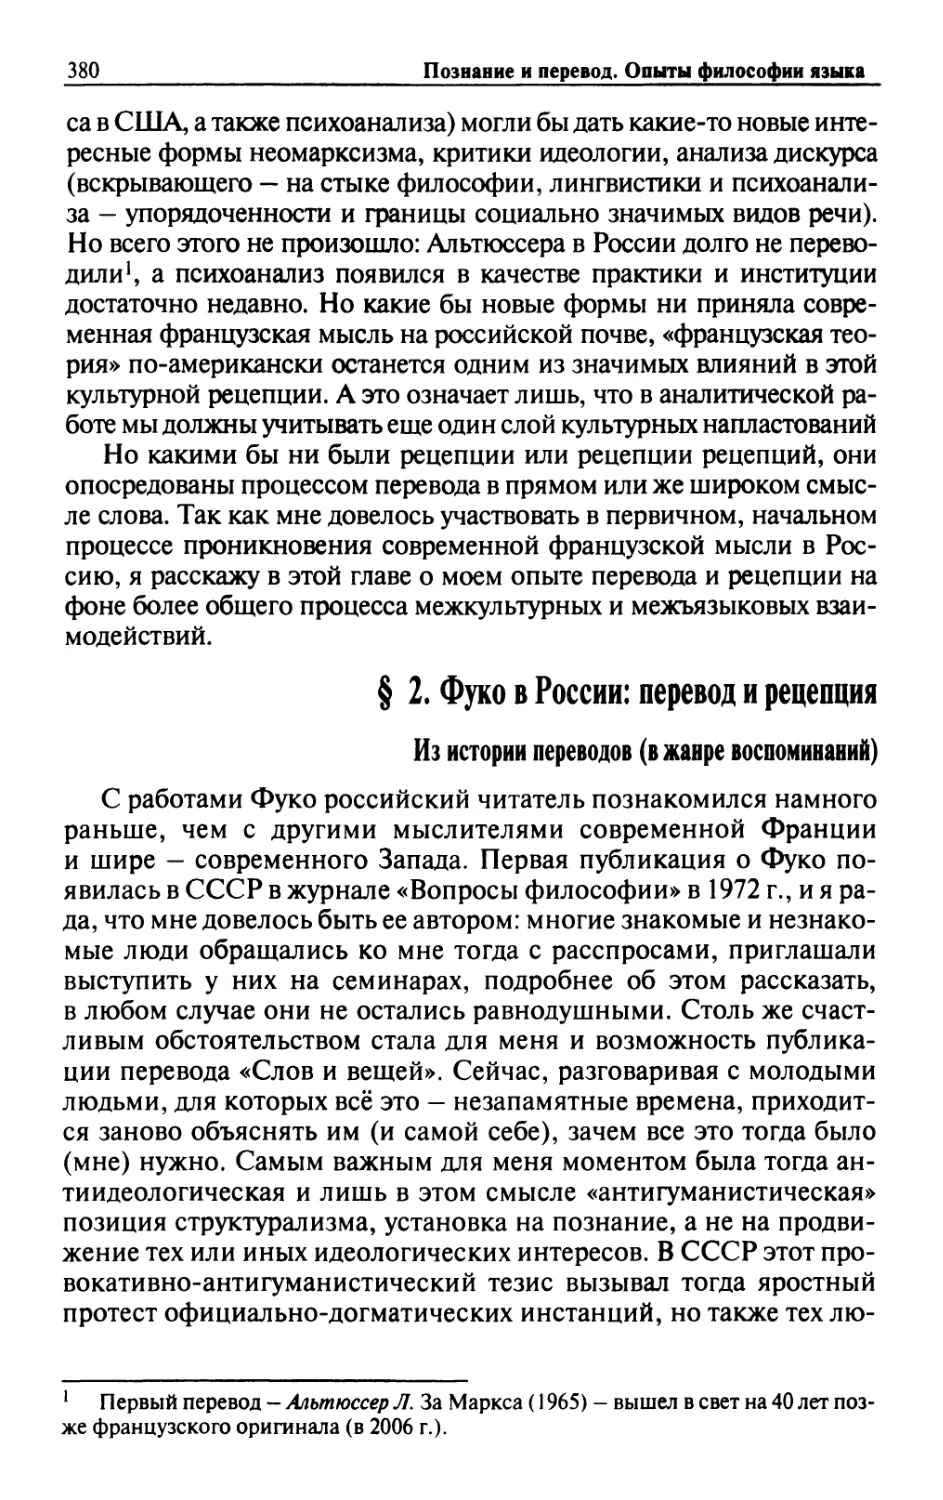 § 2. Фуко в России: перевод и рецепция